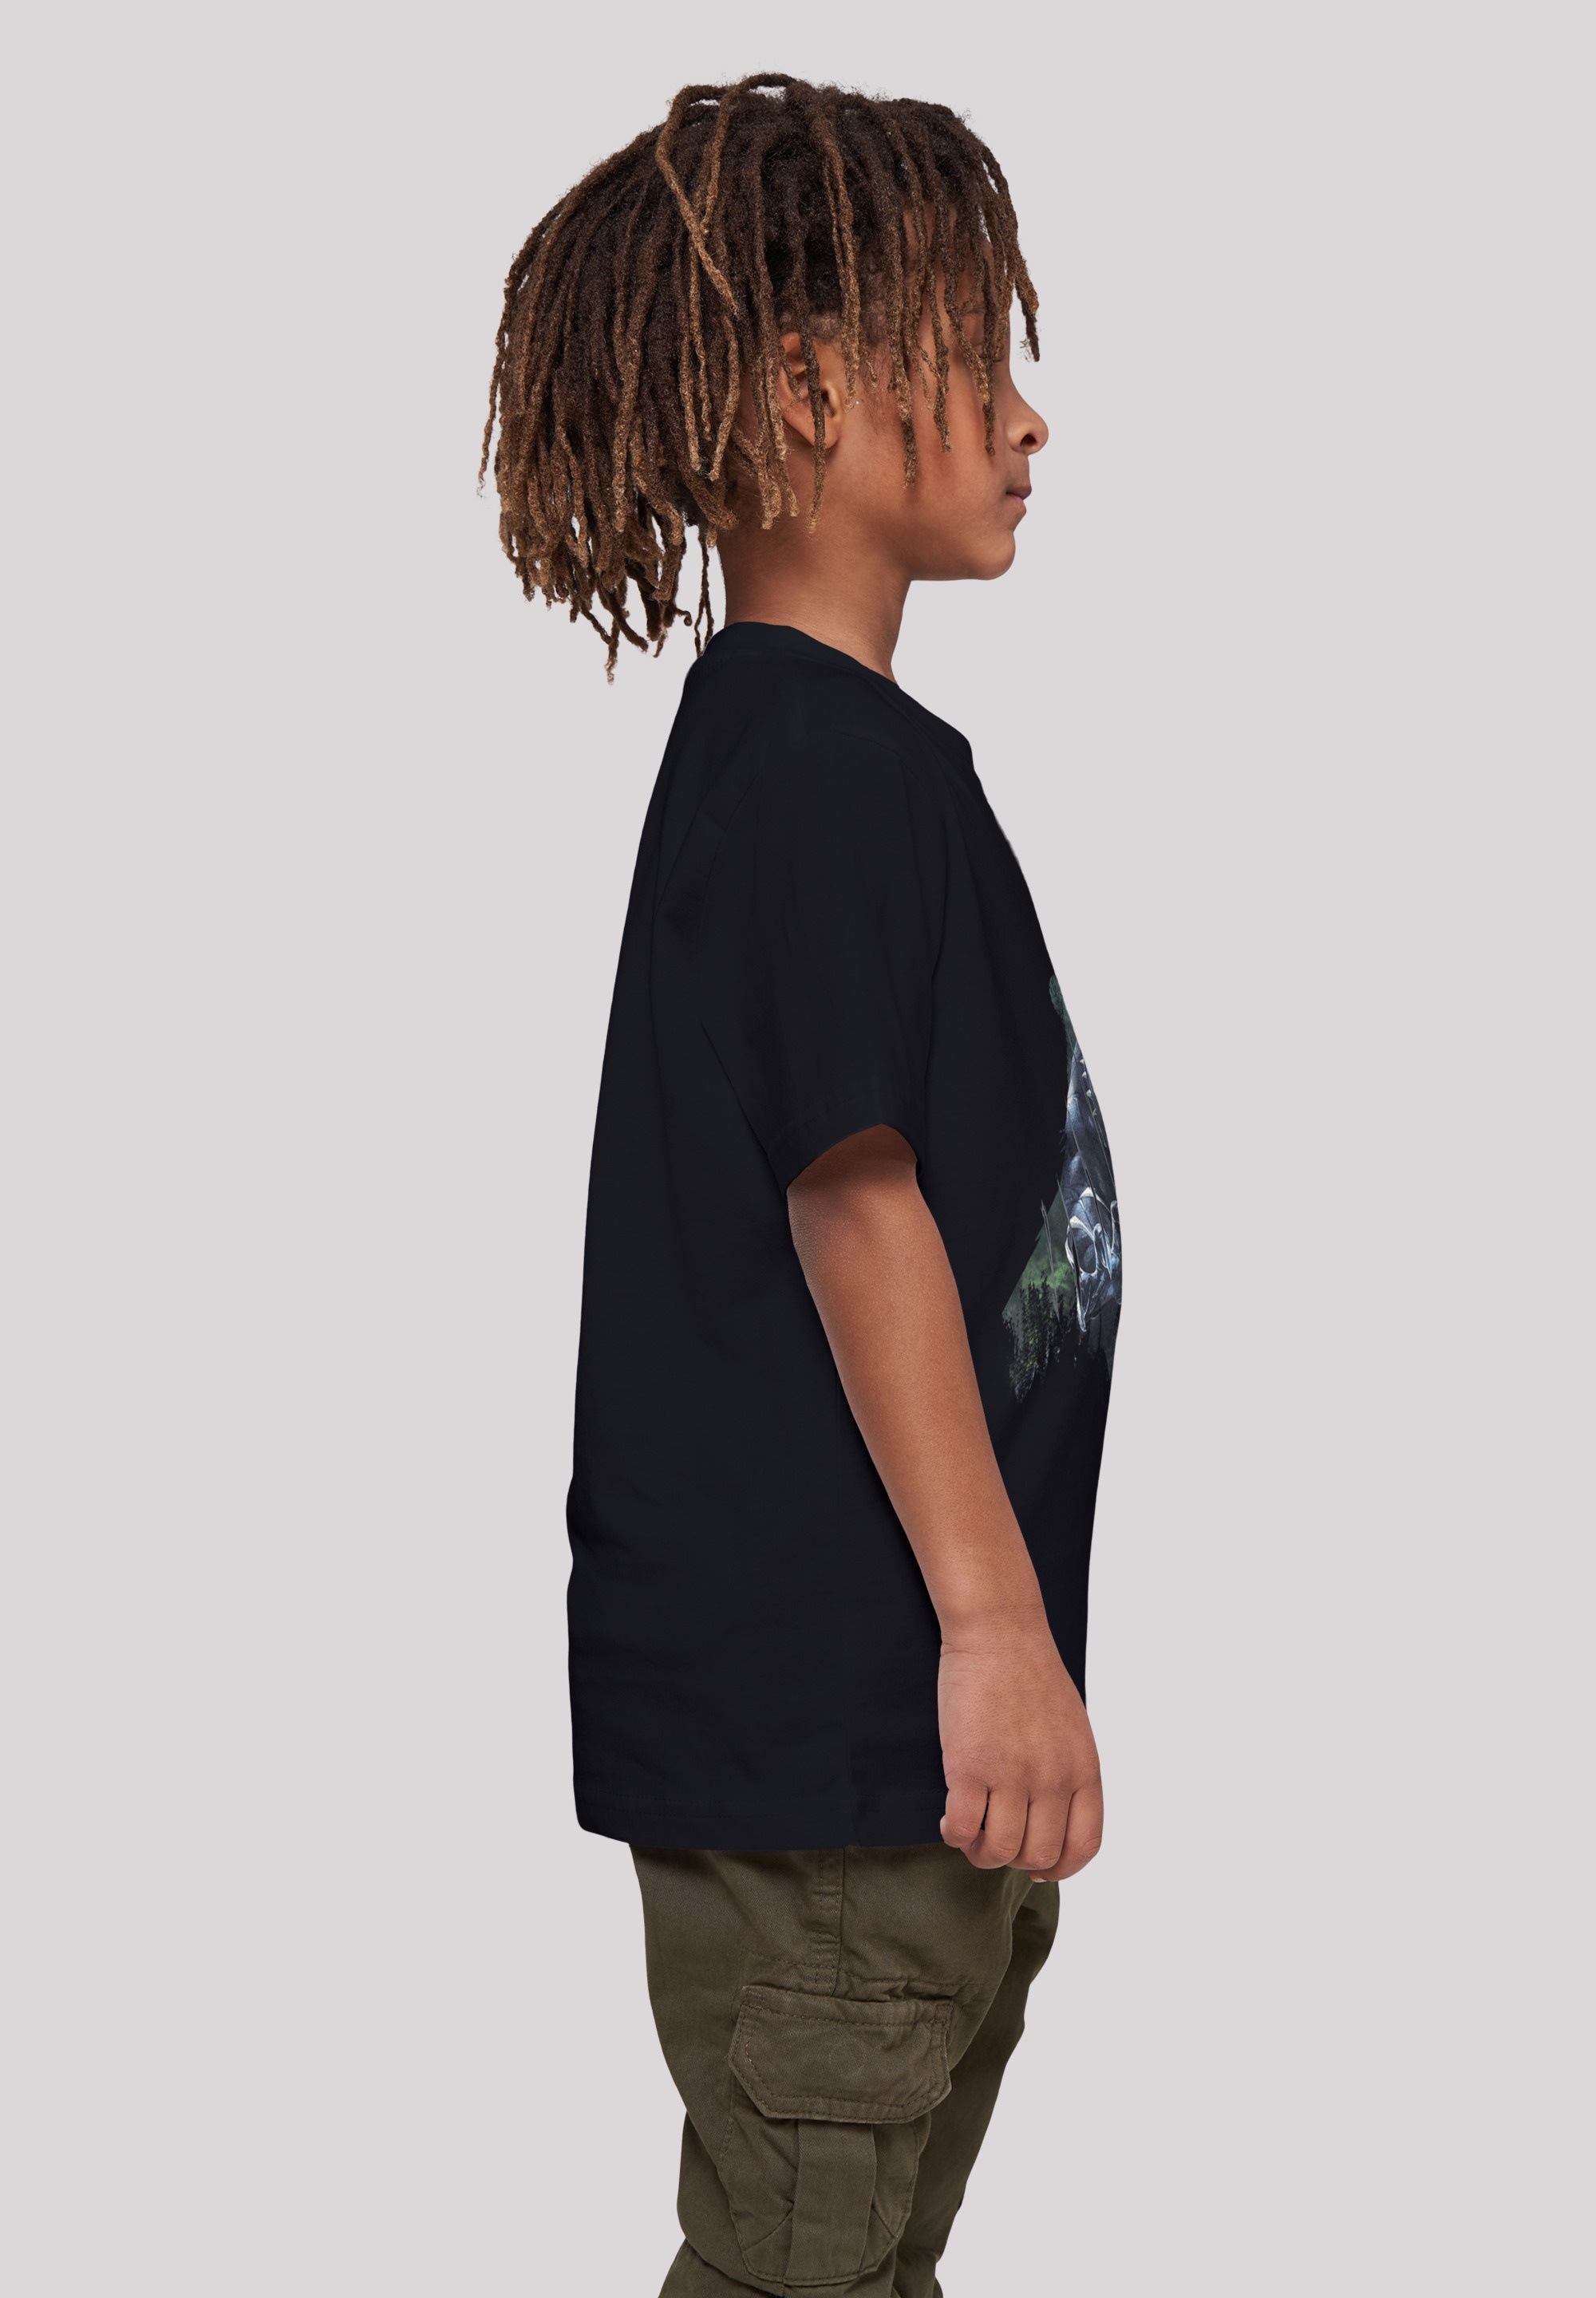 Wild F4NT4STIC Black Kinder,Premium | Print online kaufen Sillhouette«, BAUR T-Shirt Unisex »Marvel Panther Merch,Jungen,Mädchen,Logo